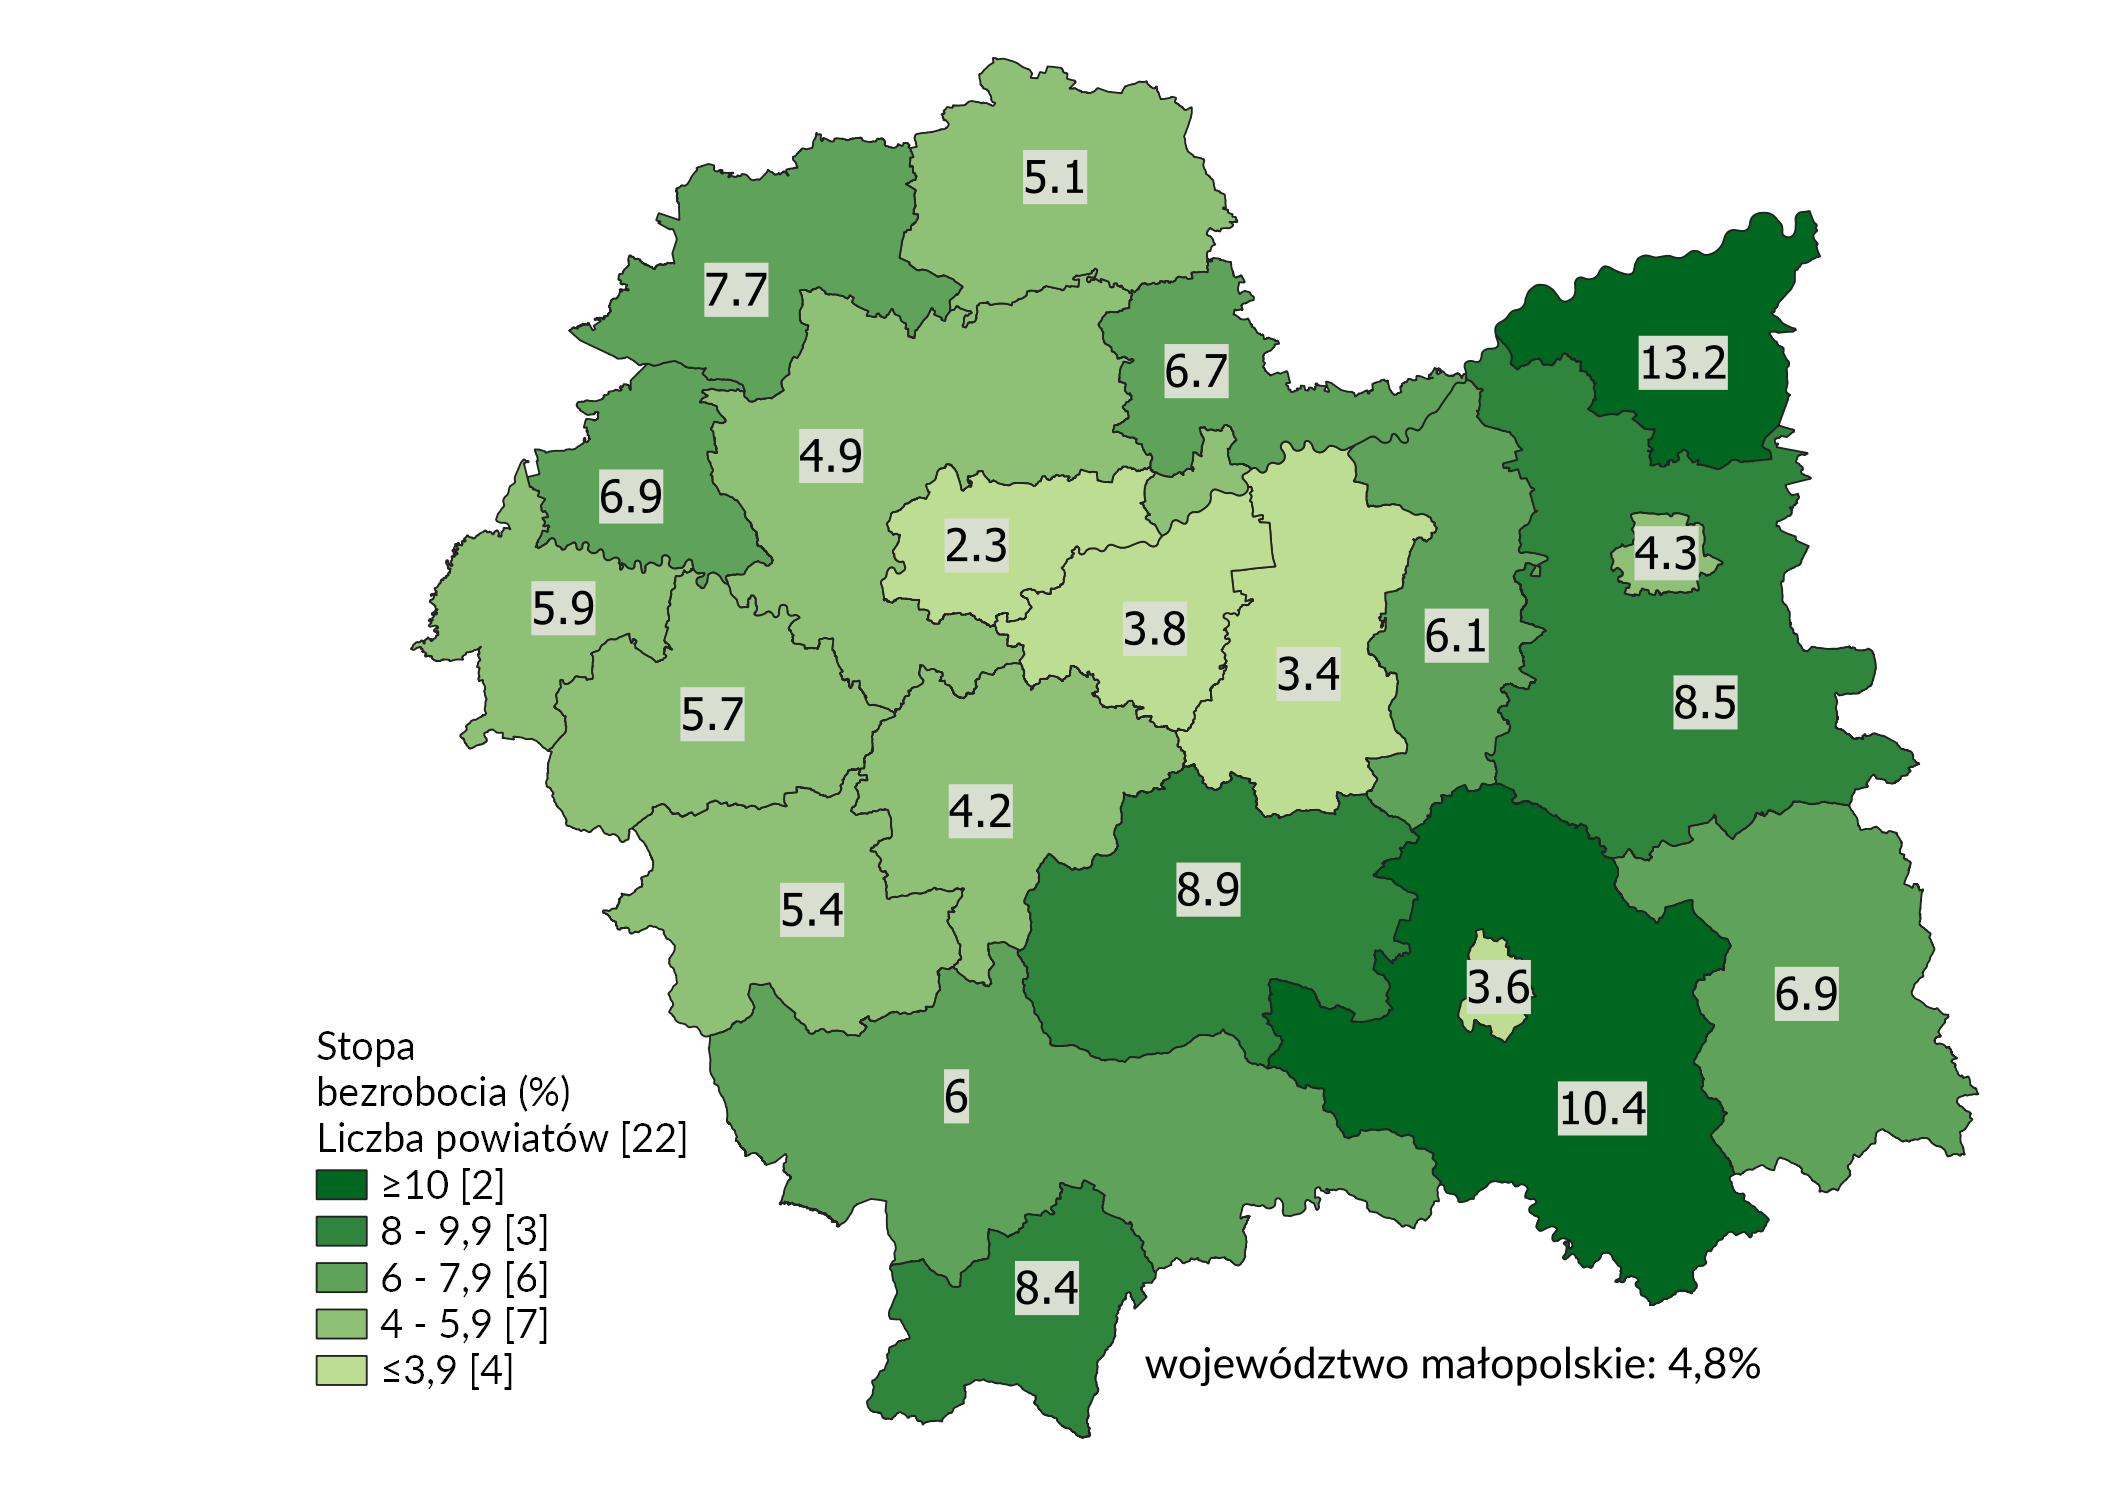 Mapa województwa małopolskiego w podziale na powiaty obrazująca zróżnicowanie stopy bezrobocia. Wartości stopy bezrobocia umieszczone są w tabeli poniżej.